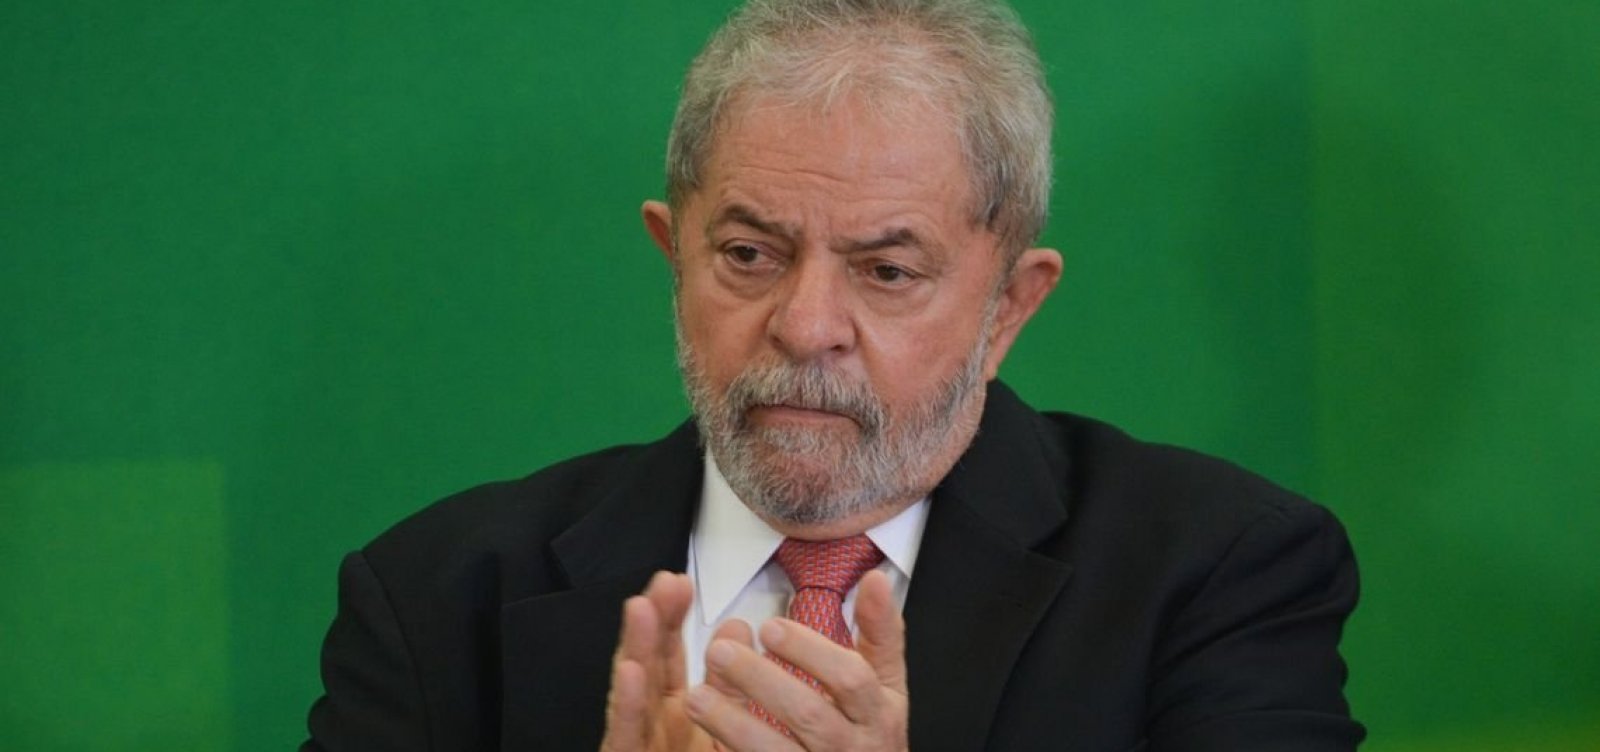 MPF envia parecer ao STJ contra anulação de caso do tríplex envolvendo Lula